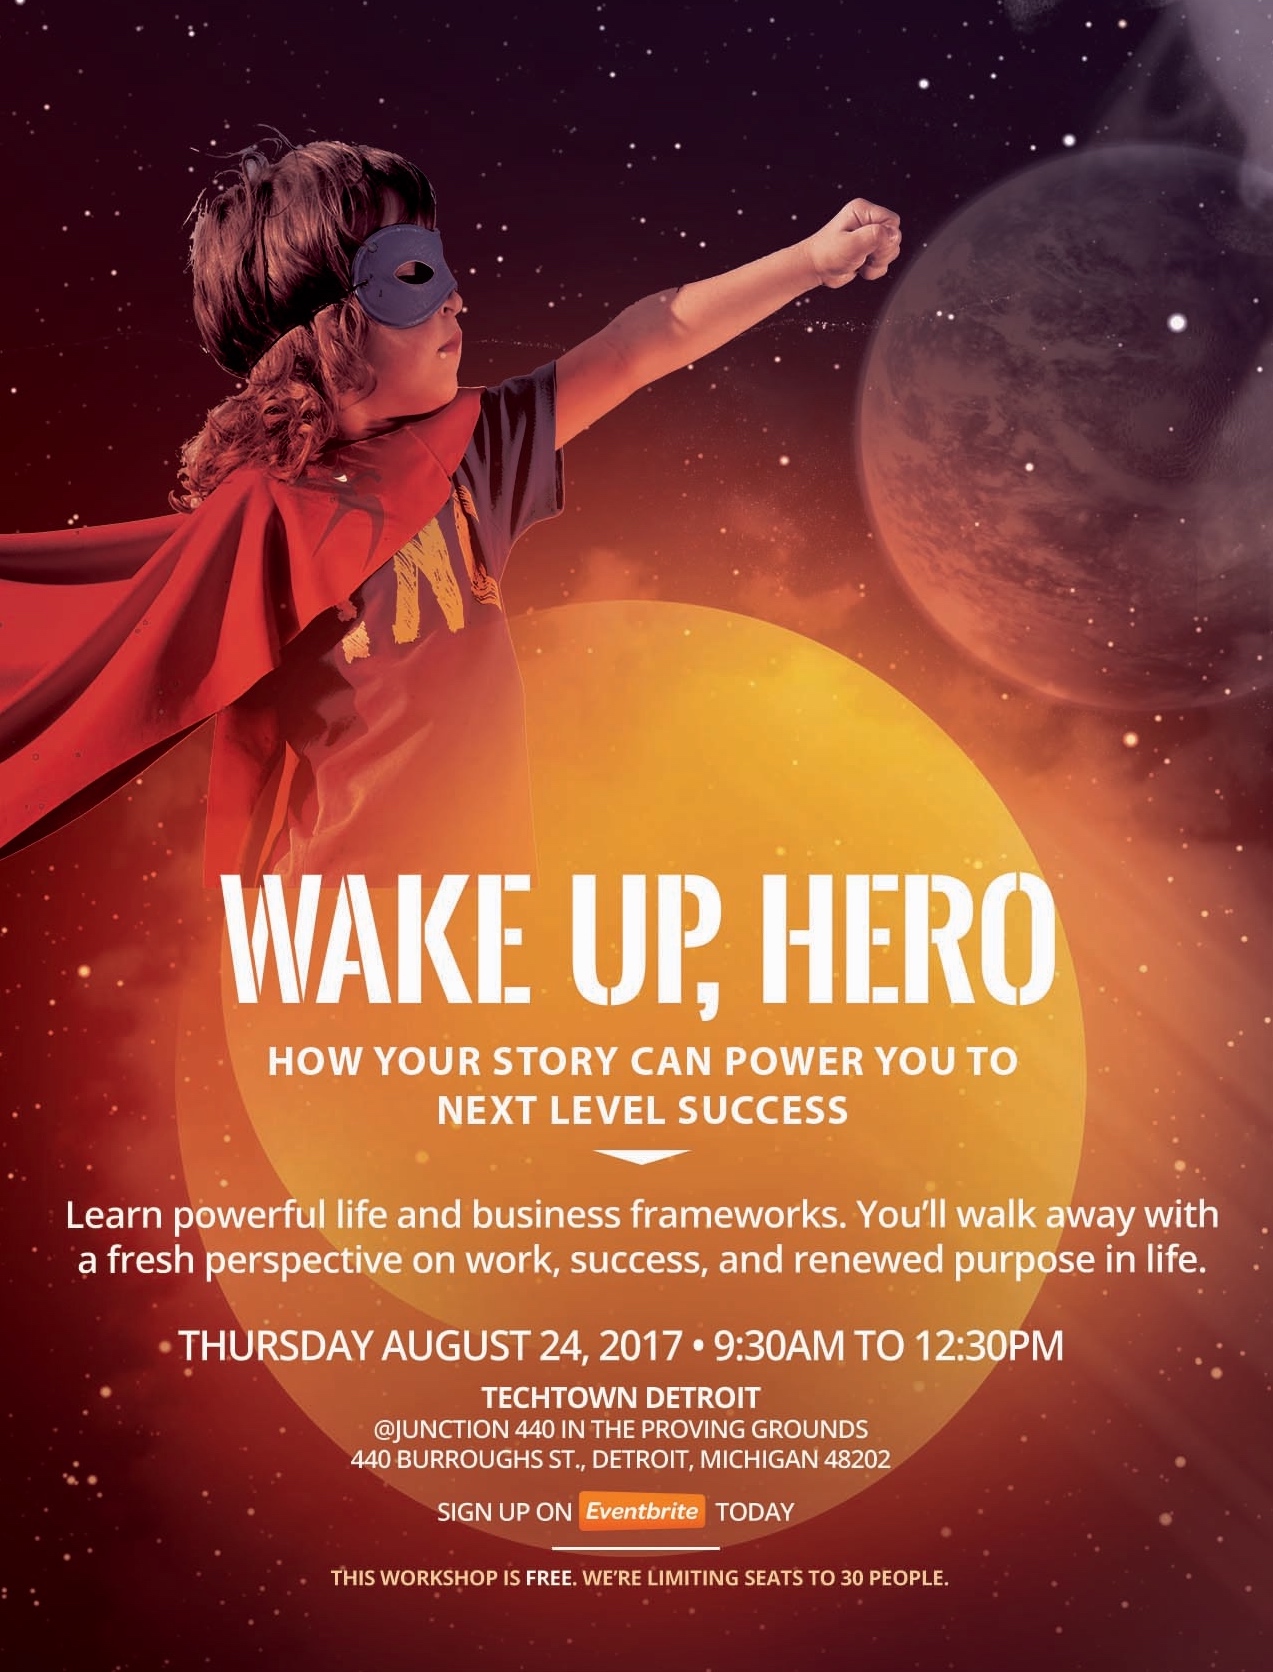 wake up, hero flyer